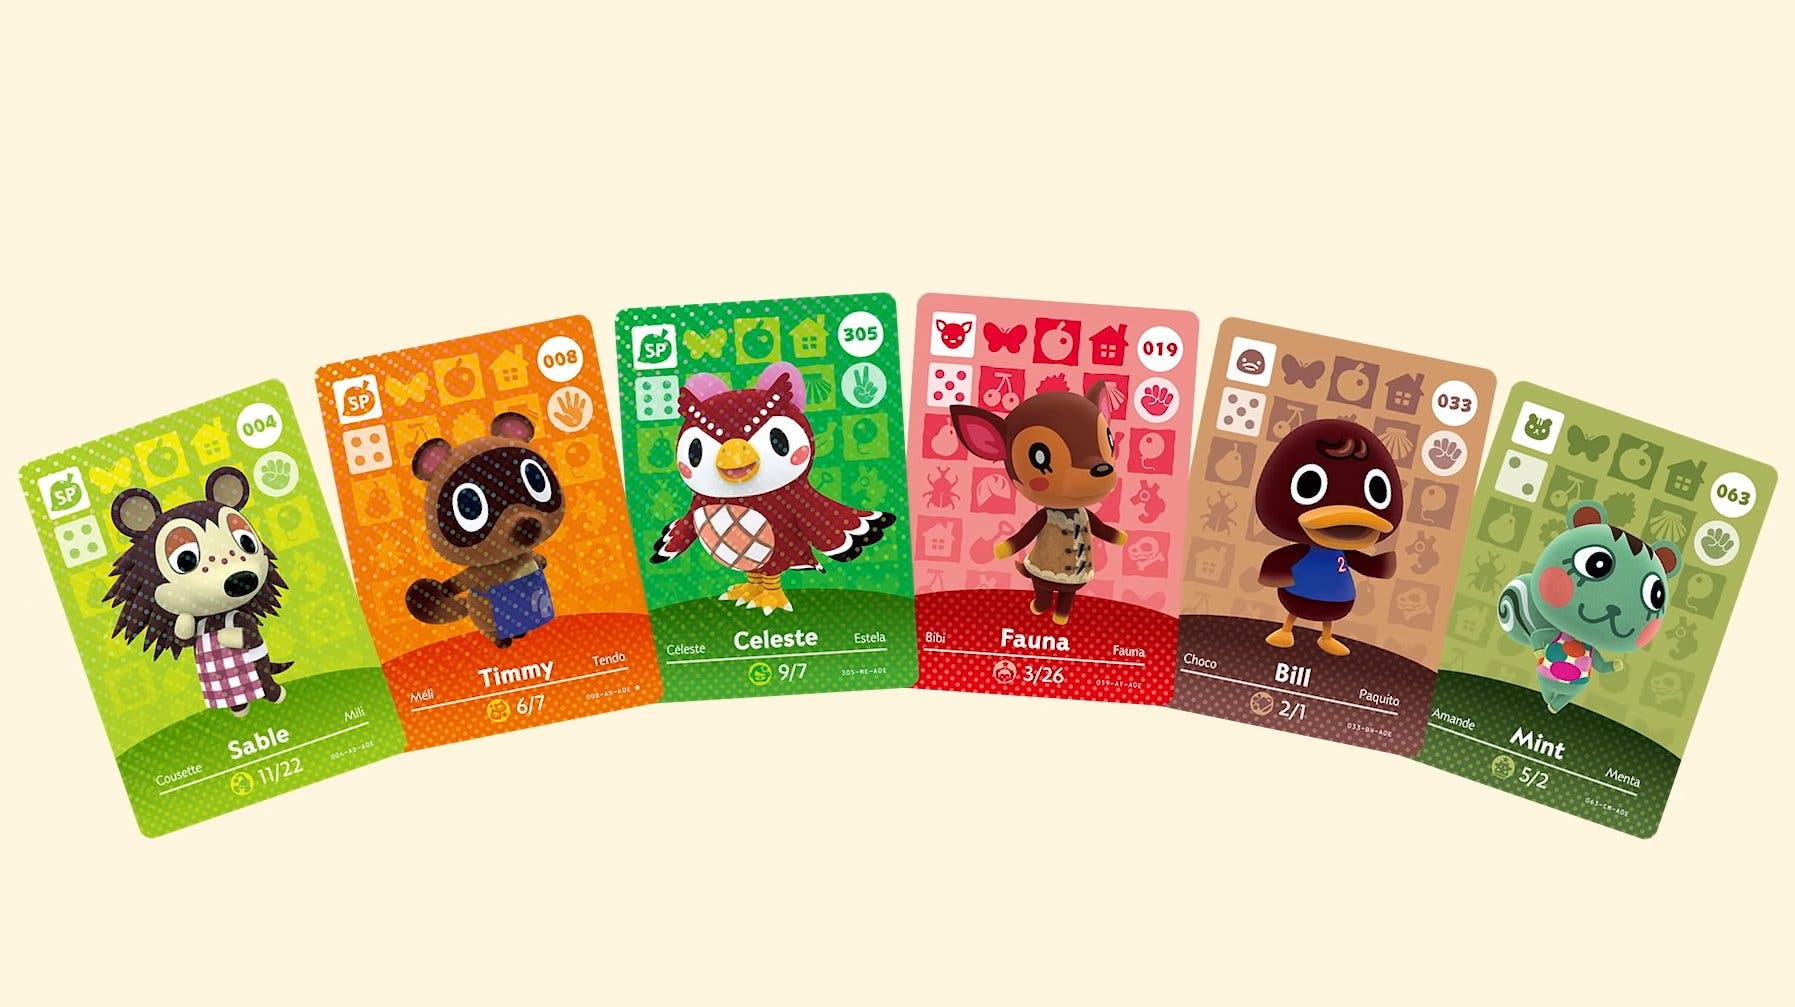 Nintendo confirma que va a seguir vendiendo cartas amiibo de Animal Crossing  - Nintenderos